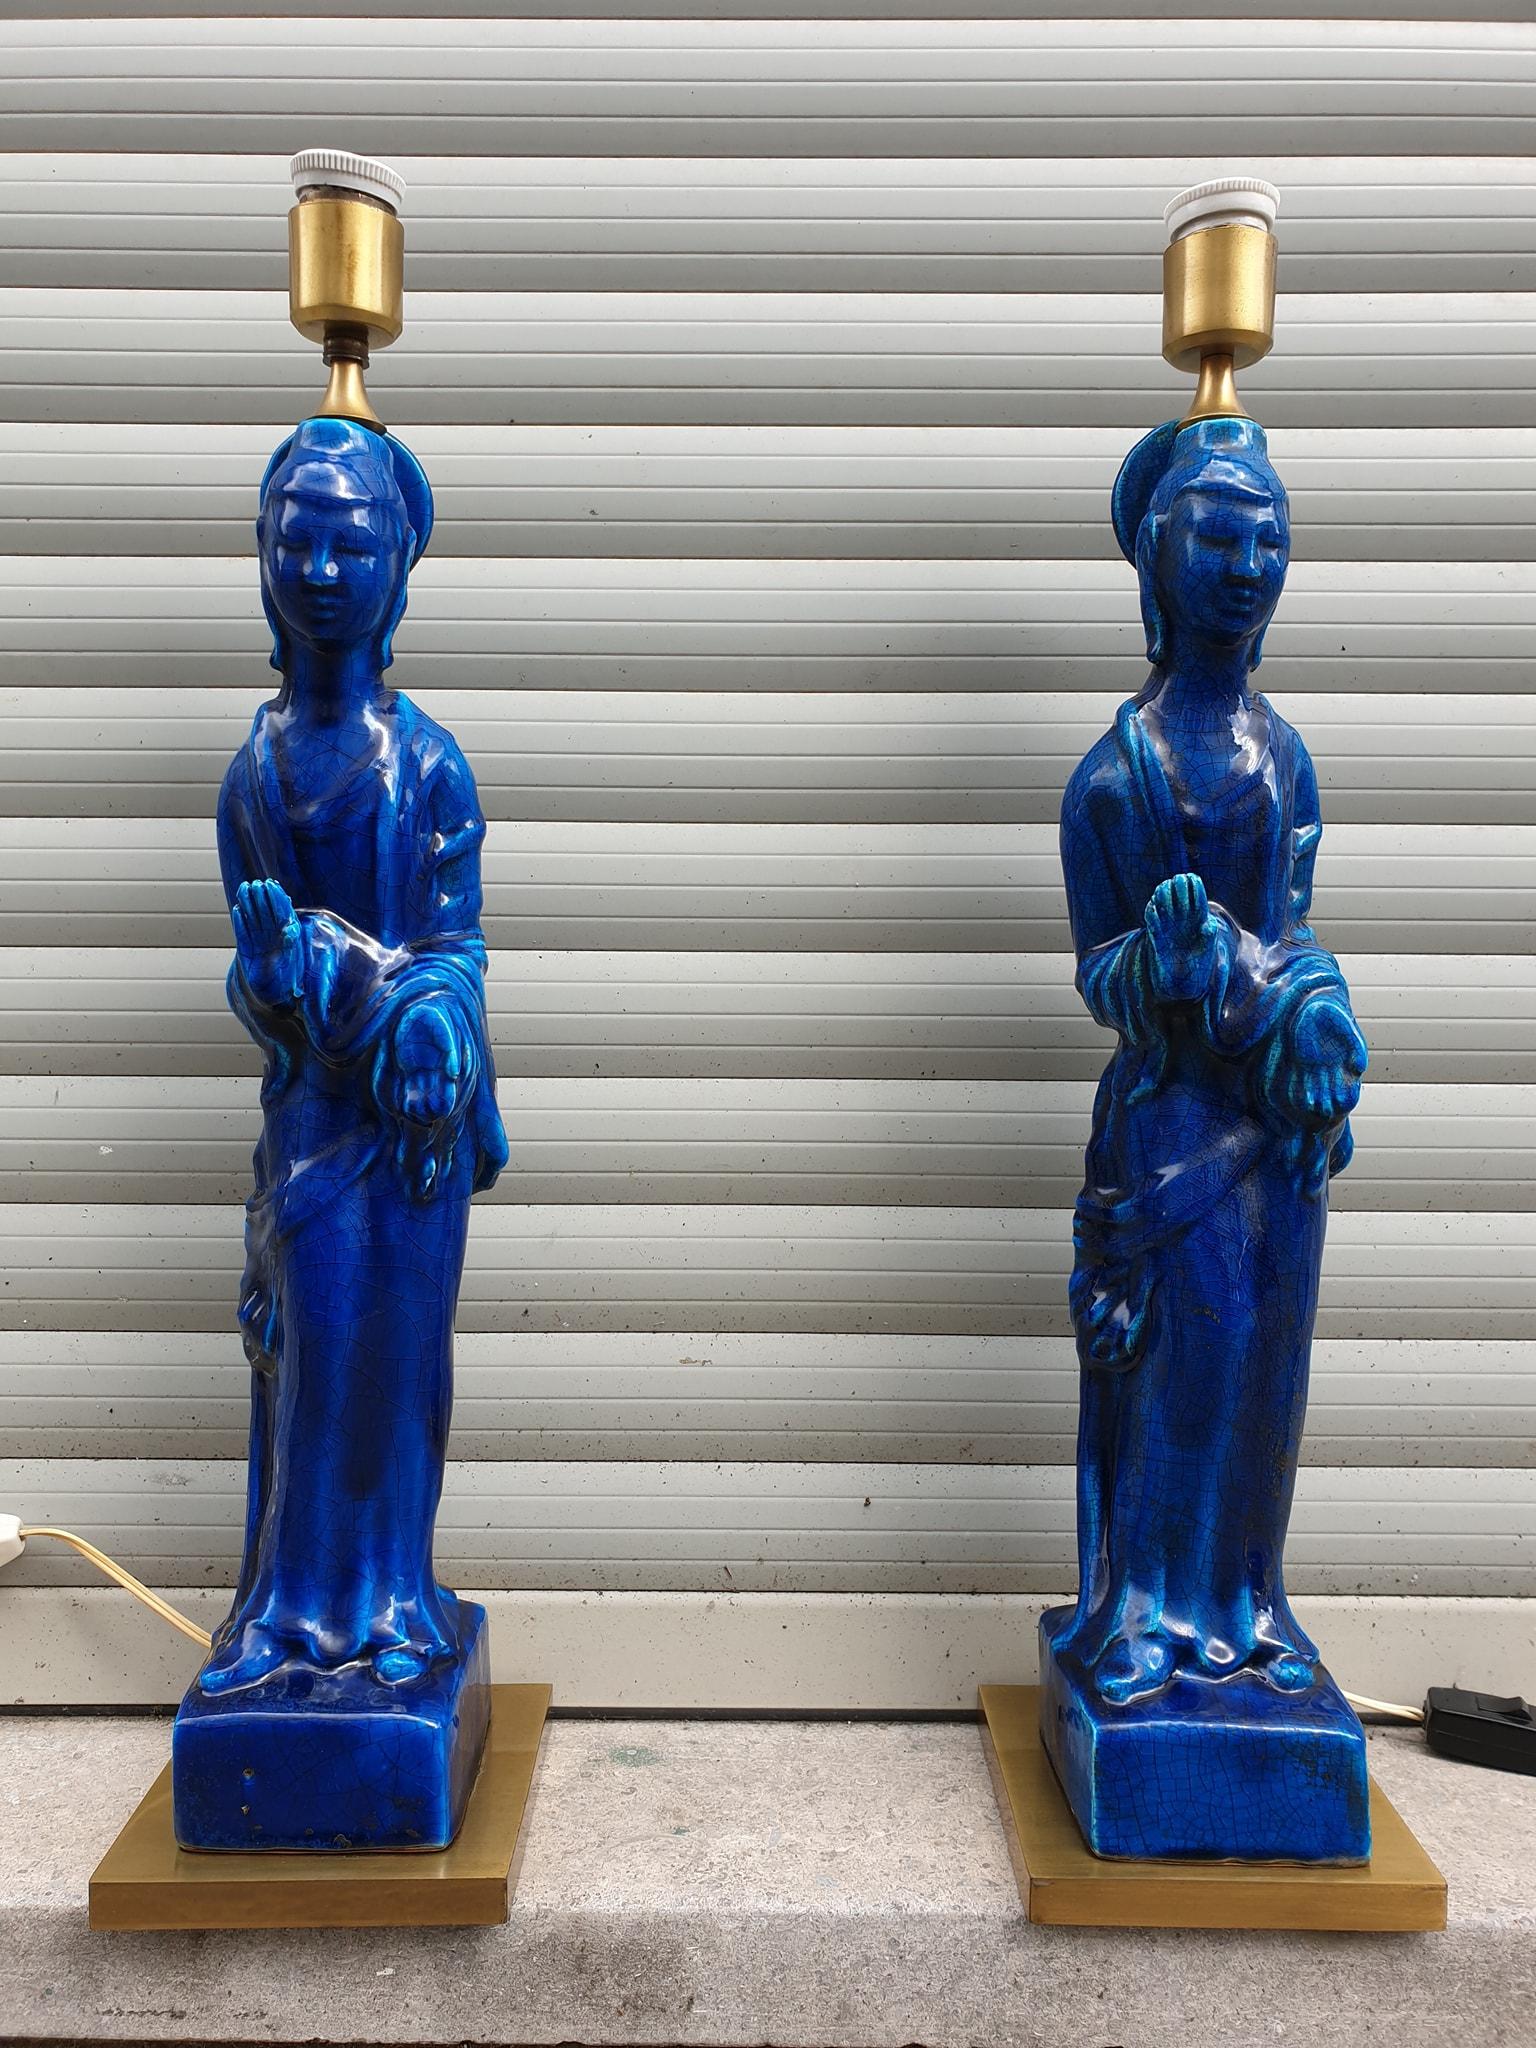 Erstaunlich Paar Ugo Zaccagnini, Gold Messing Basis und blaue Keramik chinesischen Buddha-Lampen, um 1950 von Designer Ugo Zaccagnini. Hergestellt in Italien.
Schönes einzigartiges Paar passender Lampen.
Maße: Höhe mit Schirm 90 cm,
Durchmesser